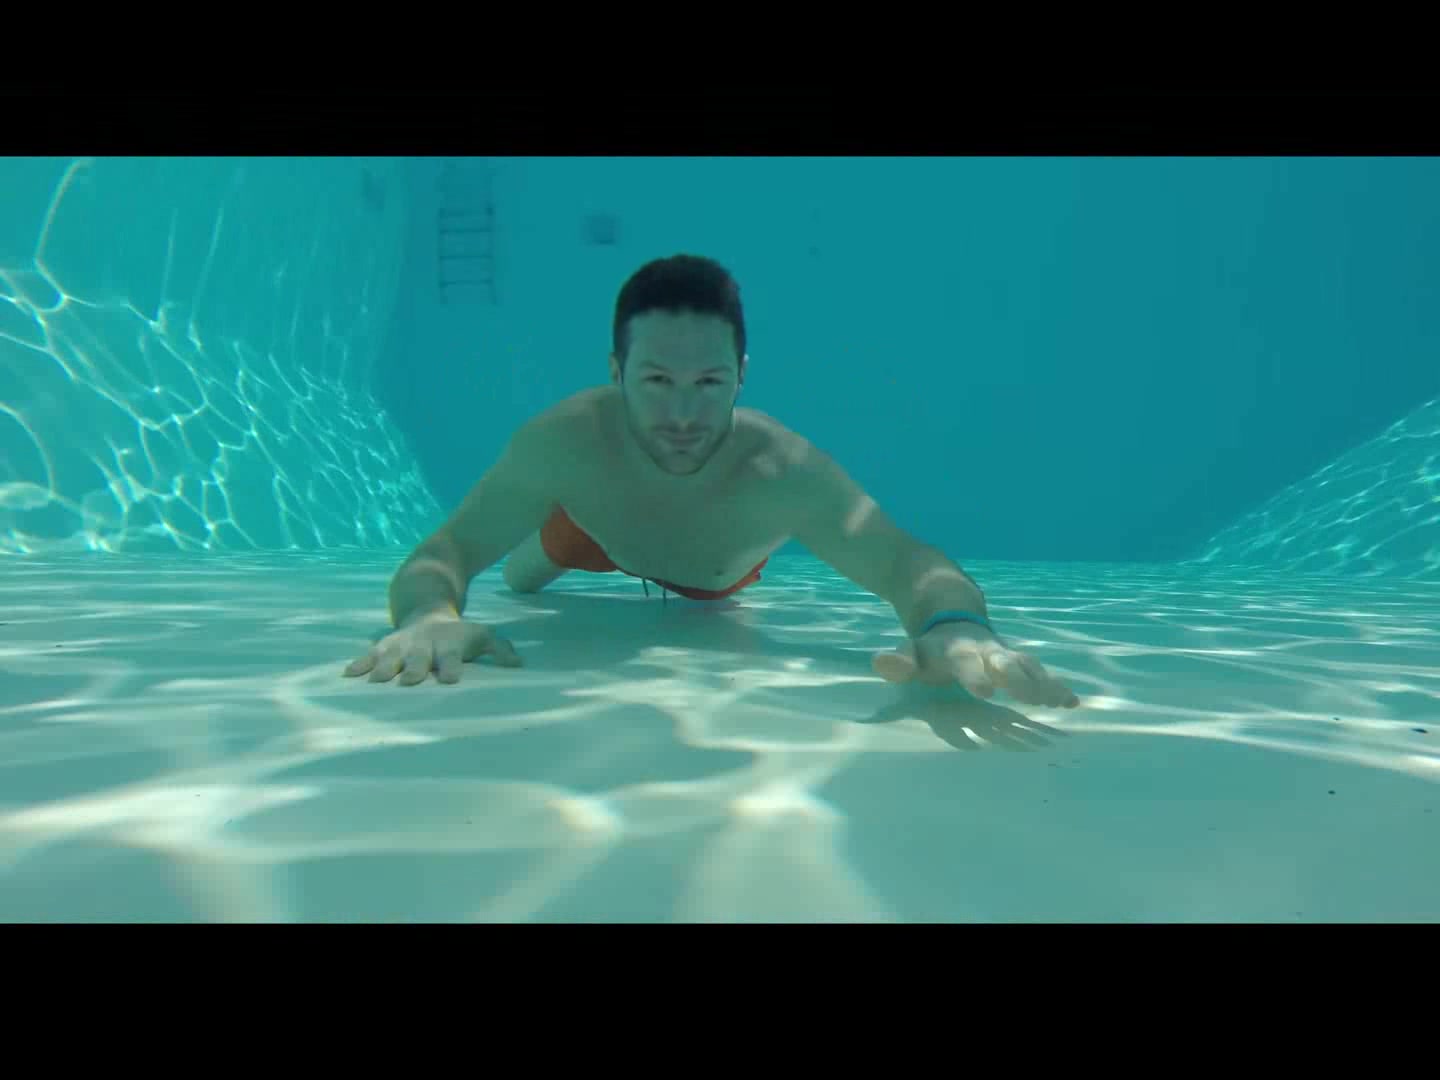 French apneist breatholding underwater